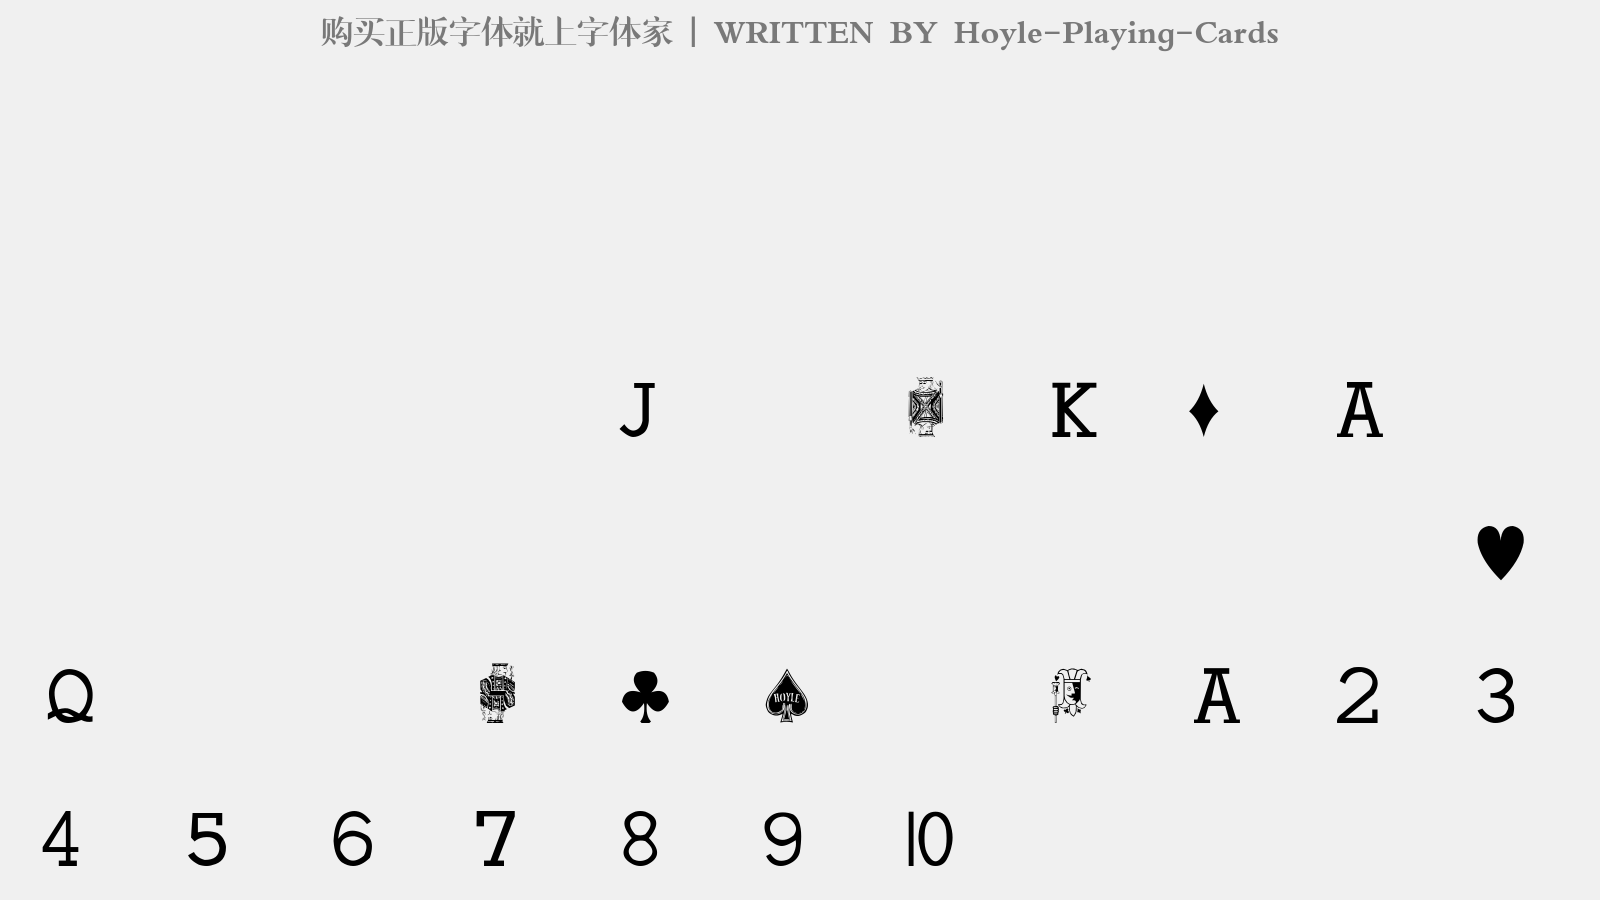 Hoyle-Playing-Cards - 大写字母/小写字母/数字